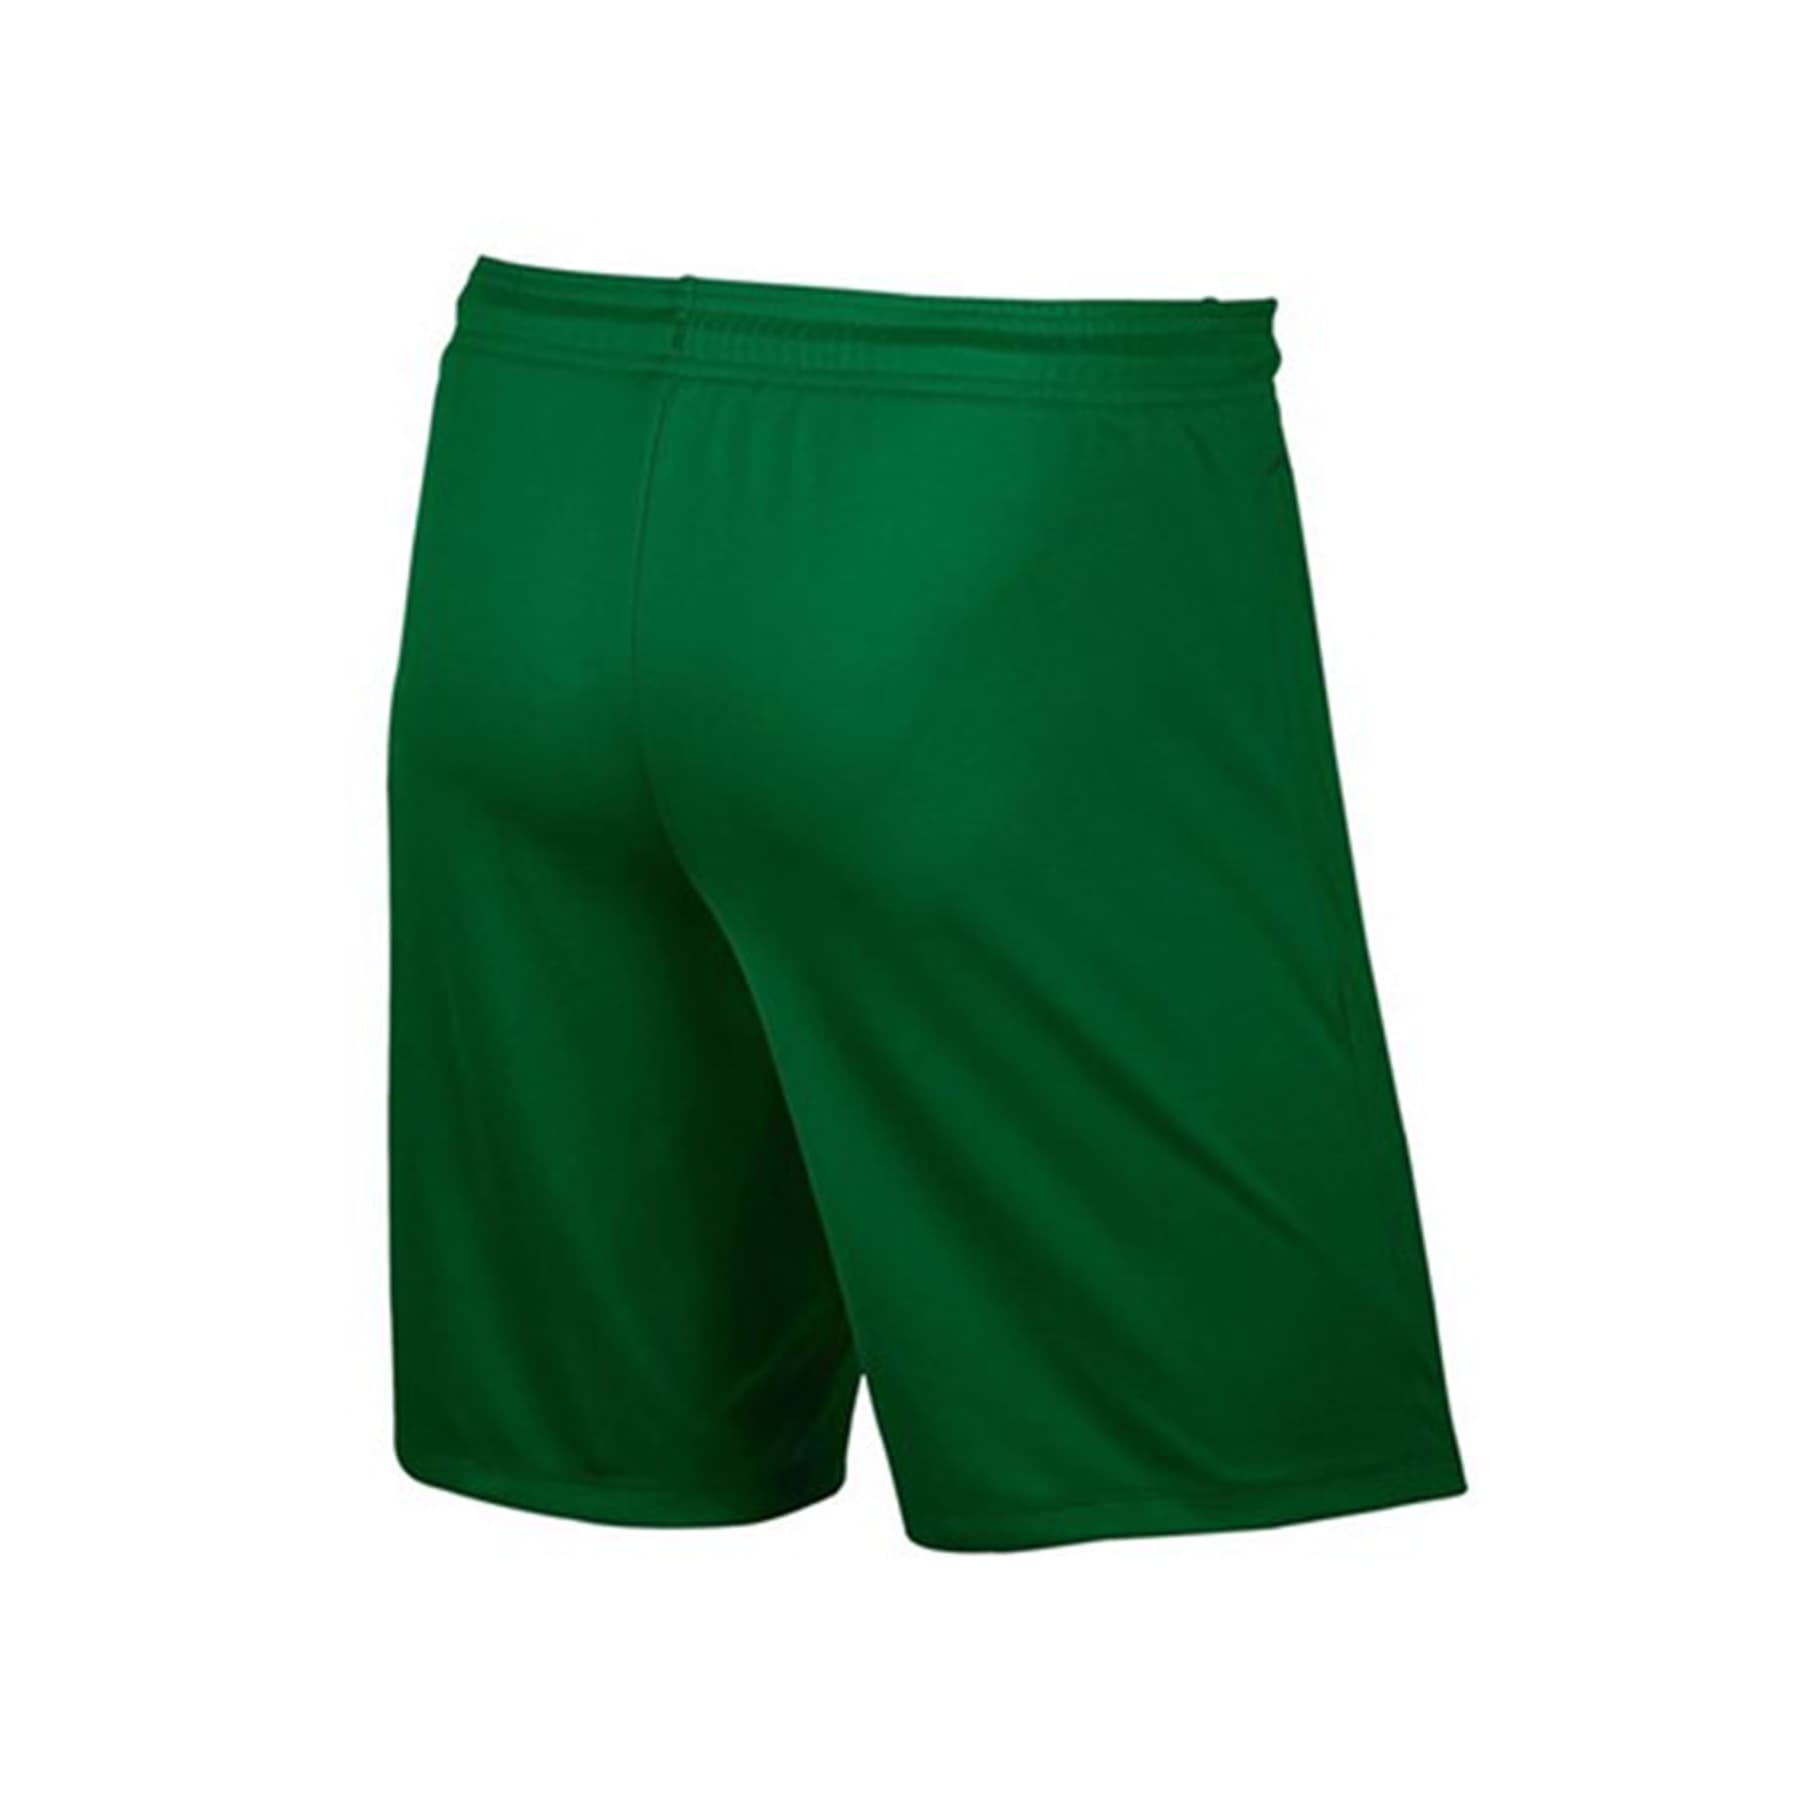 Nike Park II Knit Erkek Yeşil Futbol Şortu (725887-302)